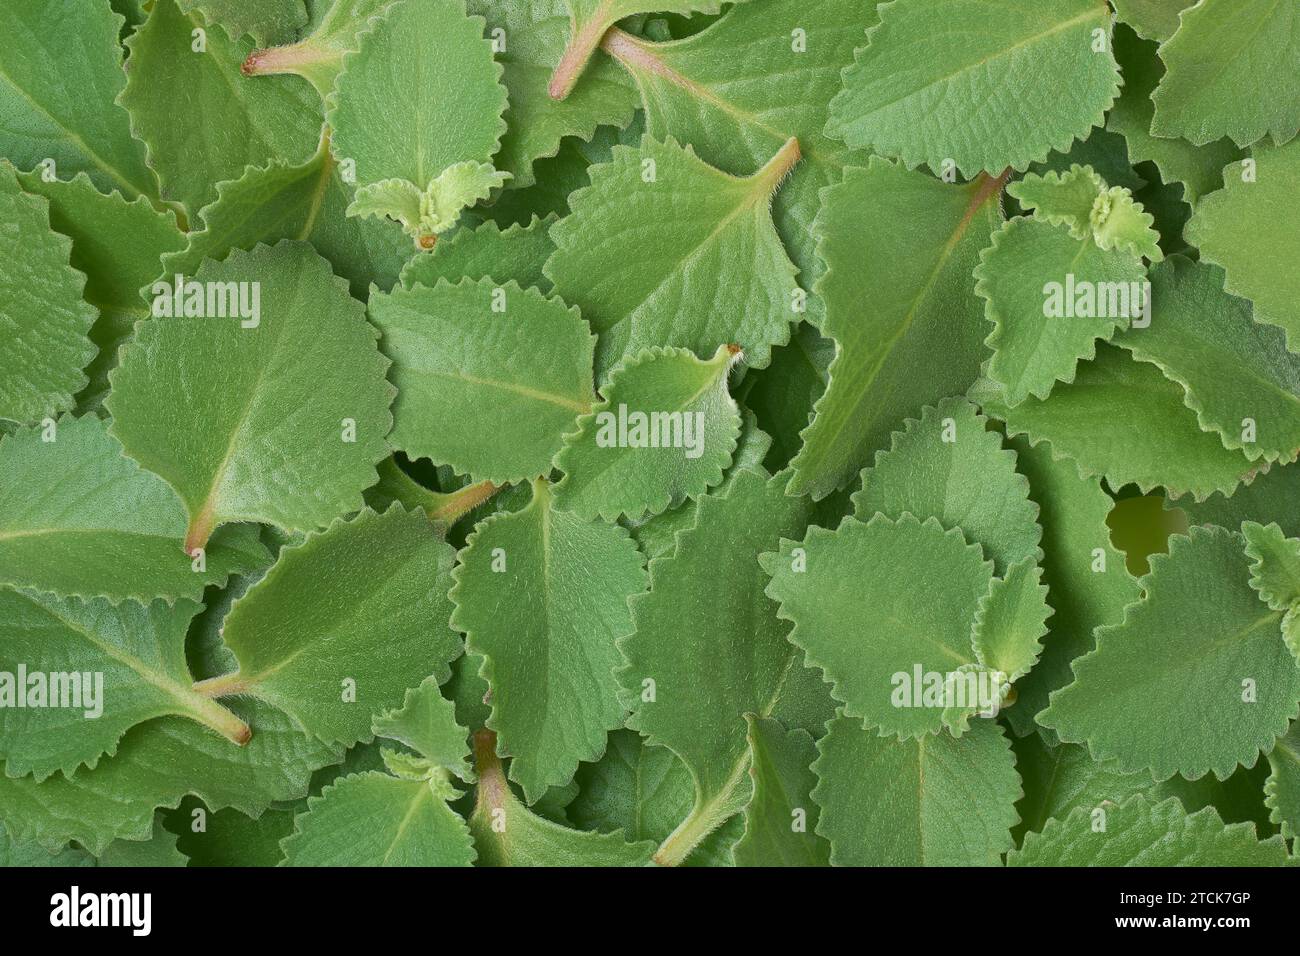 Haufen frisch geernteter Oregano-Blätter, auch Origanum oder wilder Marjoram genannt, weit verbreitete aromatische Pflanzenblätter aus der Familie der Pfefferminze Stockfoto